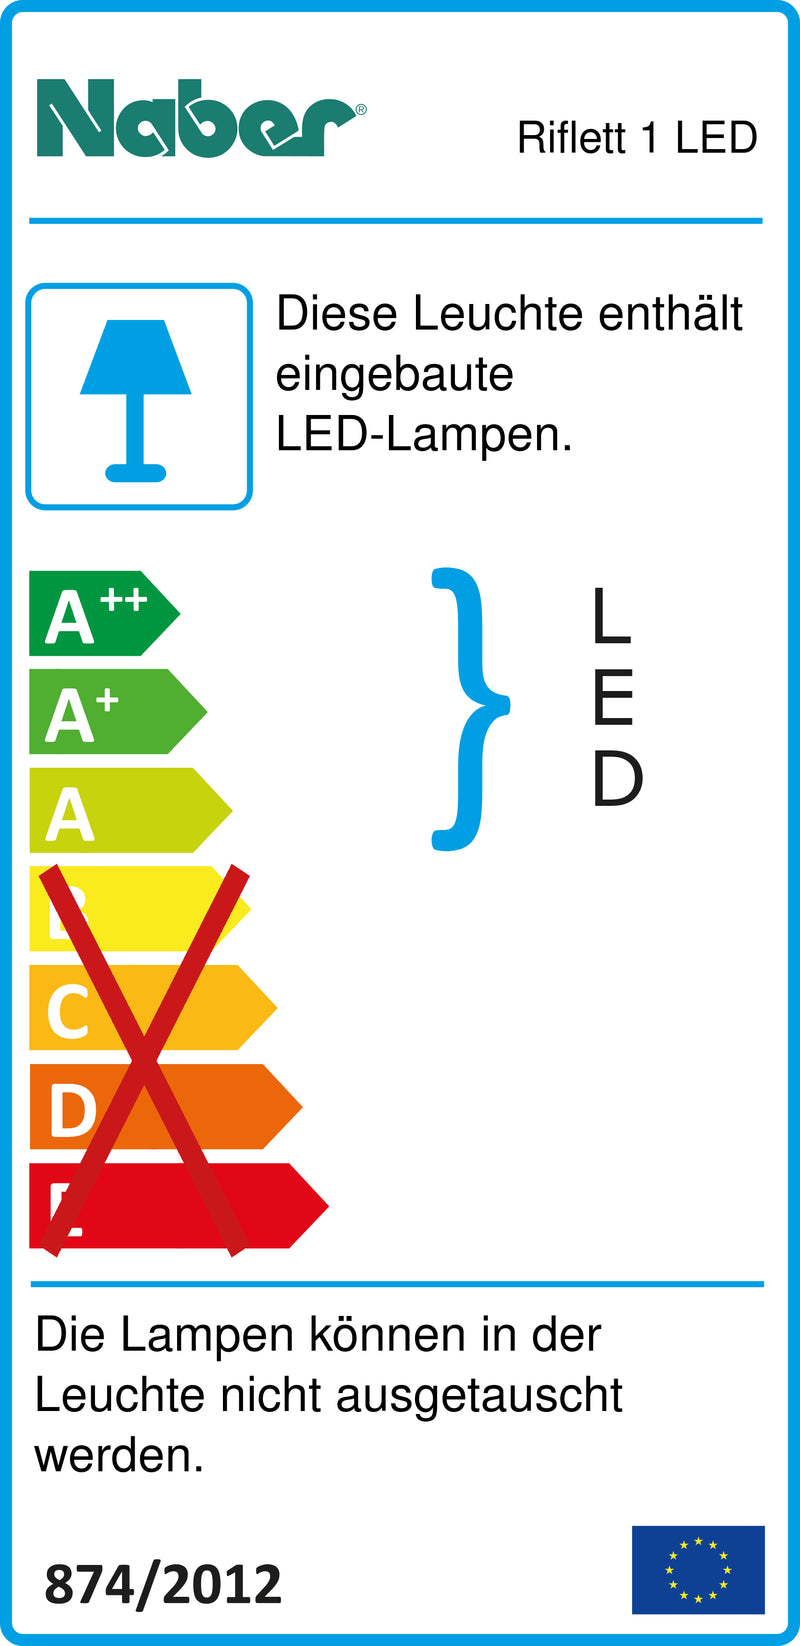 E-Label zu Zeichnung zu Riflett 1 LED als Variante Set-2, 3000 K warmweiß von Naber GmbH in der Kategorie Lichttechnik in Österreich auf conceptshop.at